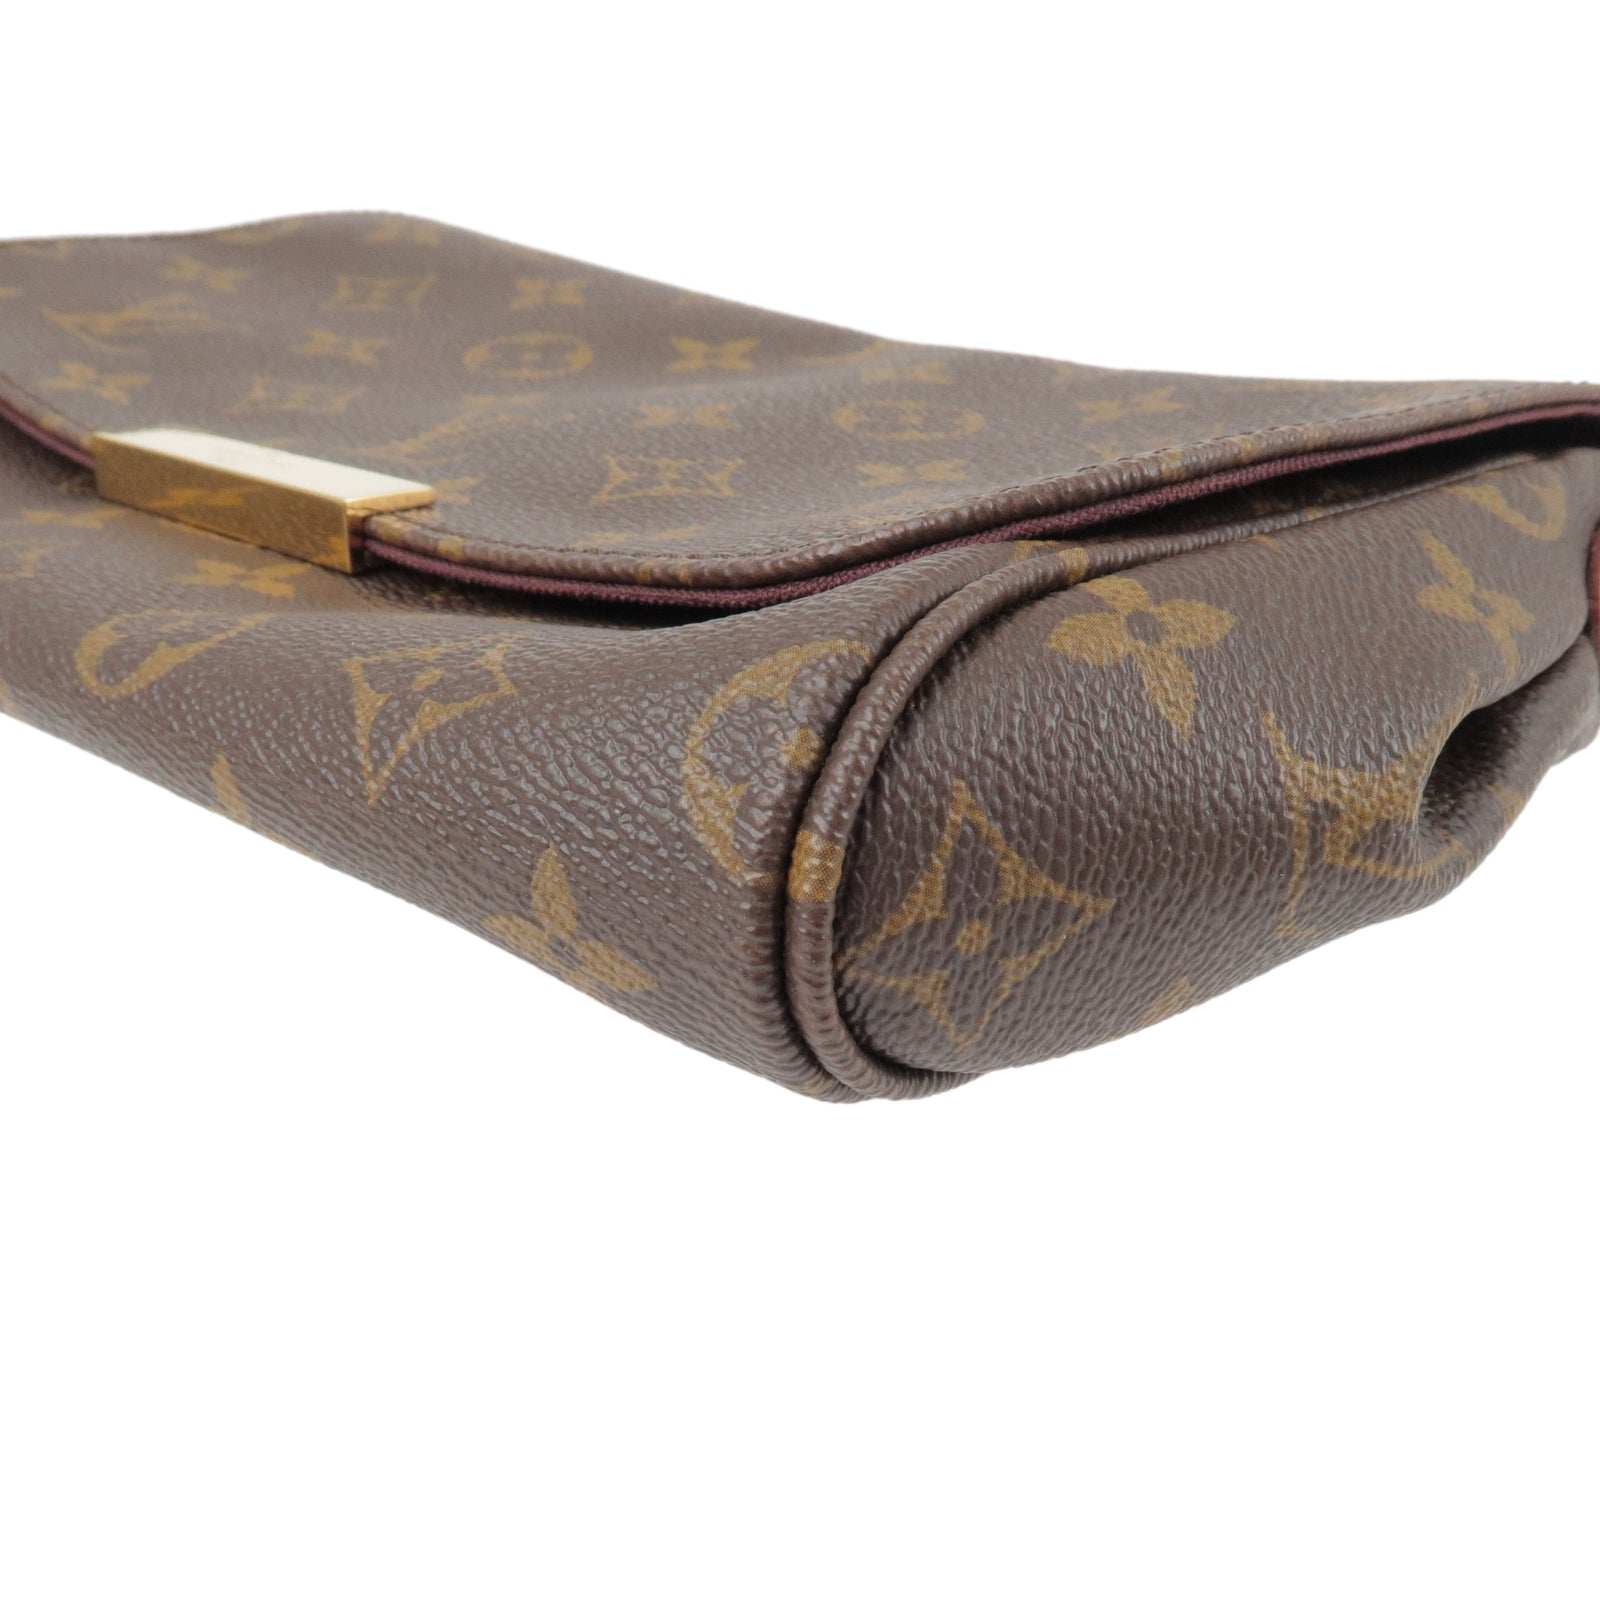 Louis-Vuitton-Monogram-Favorite-MM-2Way-Shoulder-Bag-M40718 – dct